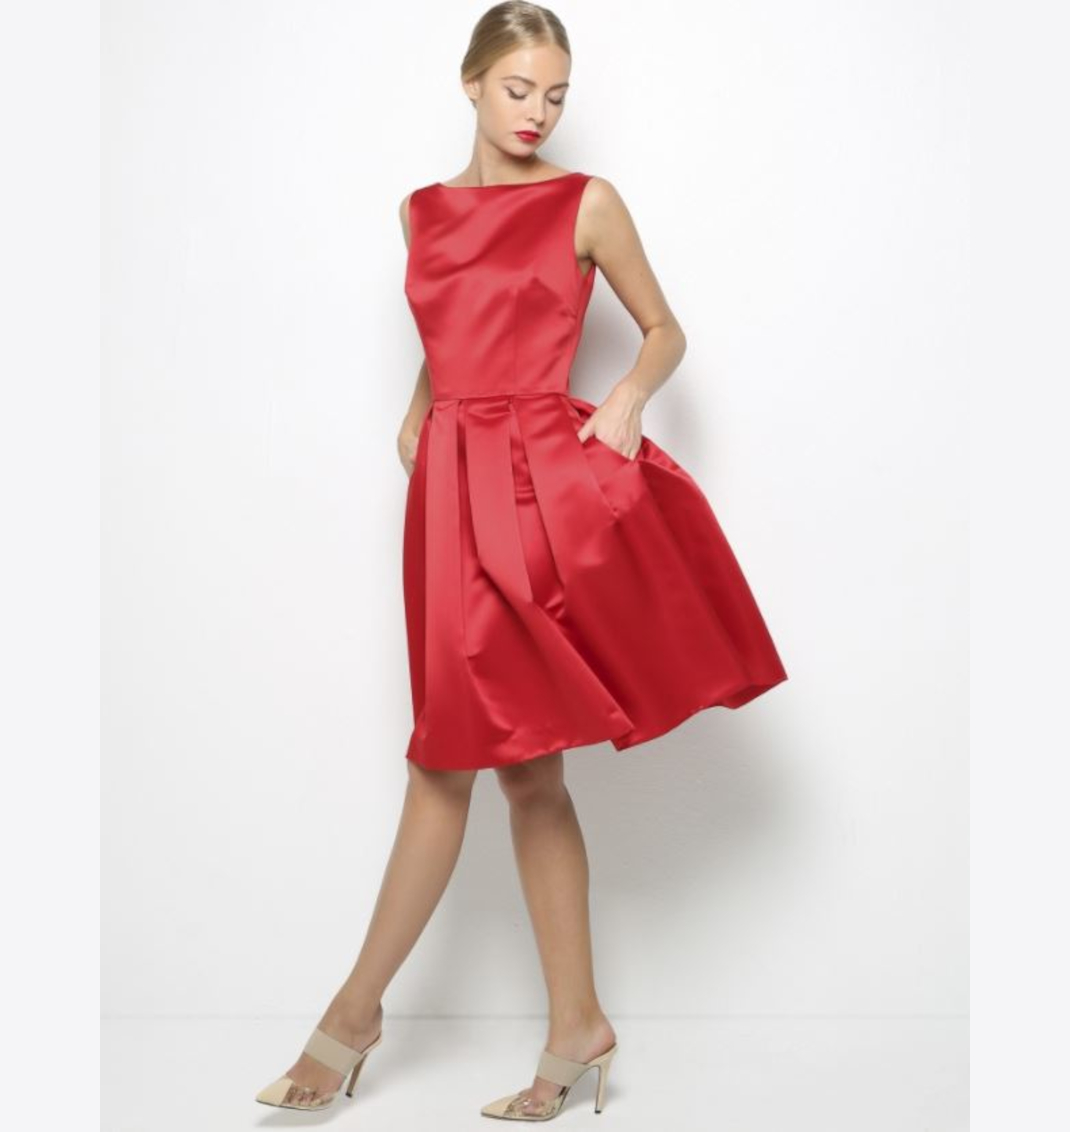 μοντέλο με κόκκινο φόρεμα 